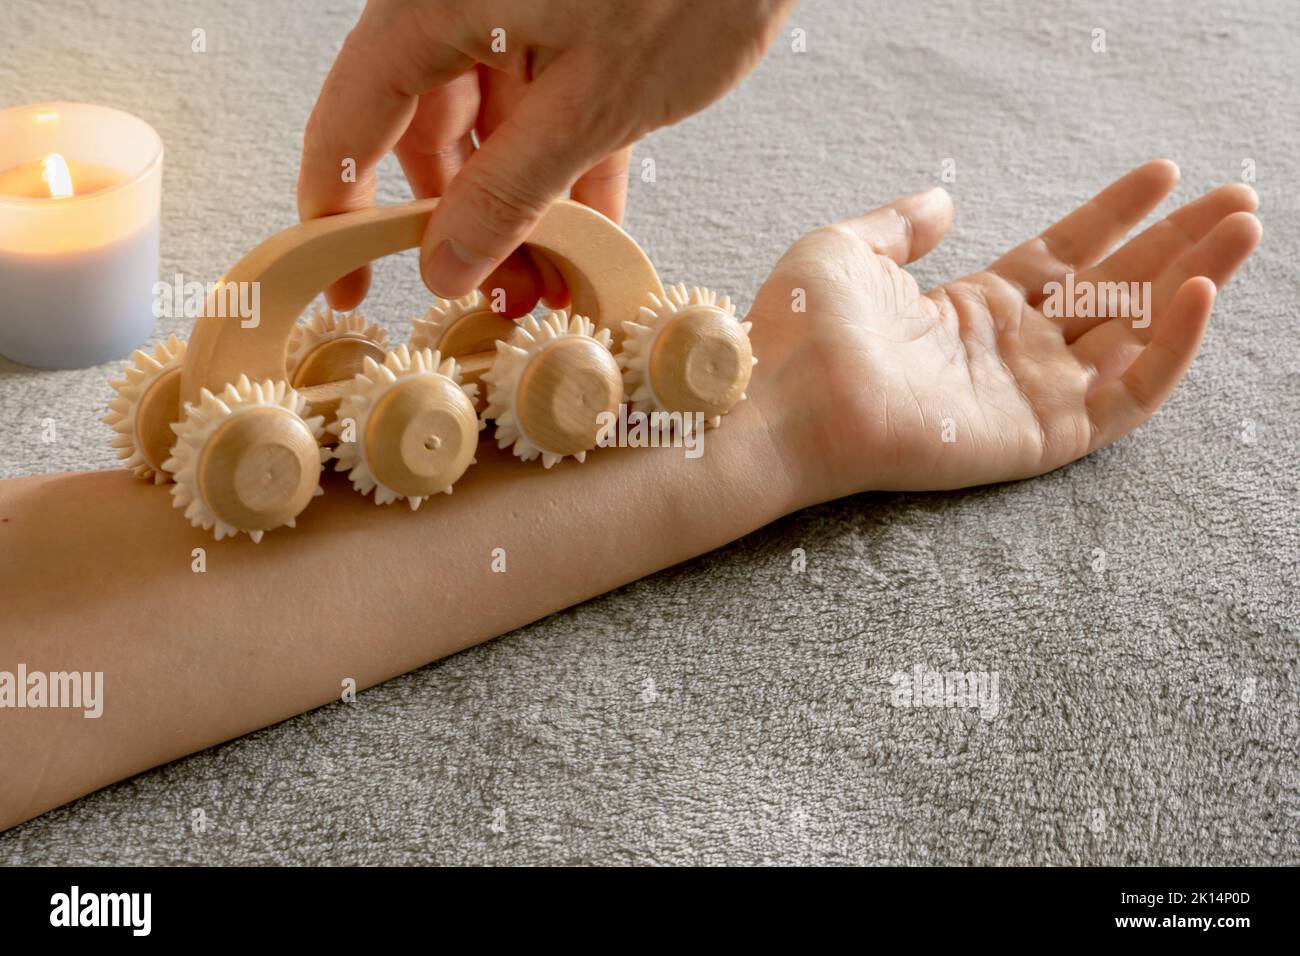 Donna che riceve un massaggio rilassante per stimolare il drenaggio linfatico e il flusso sanguigno in un ambiente accogliente Foto Stock